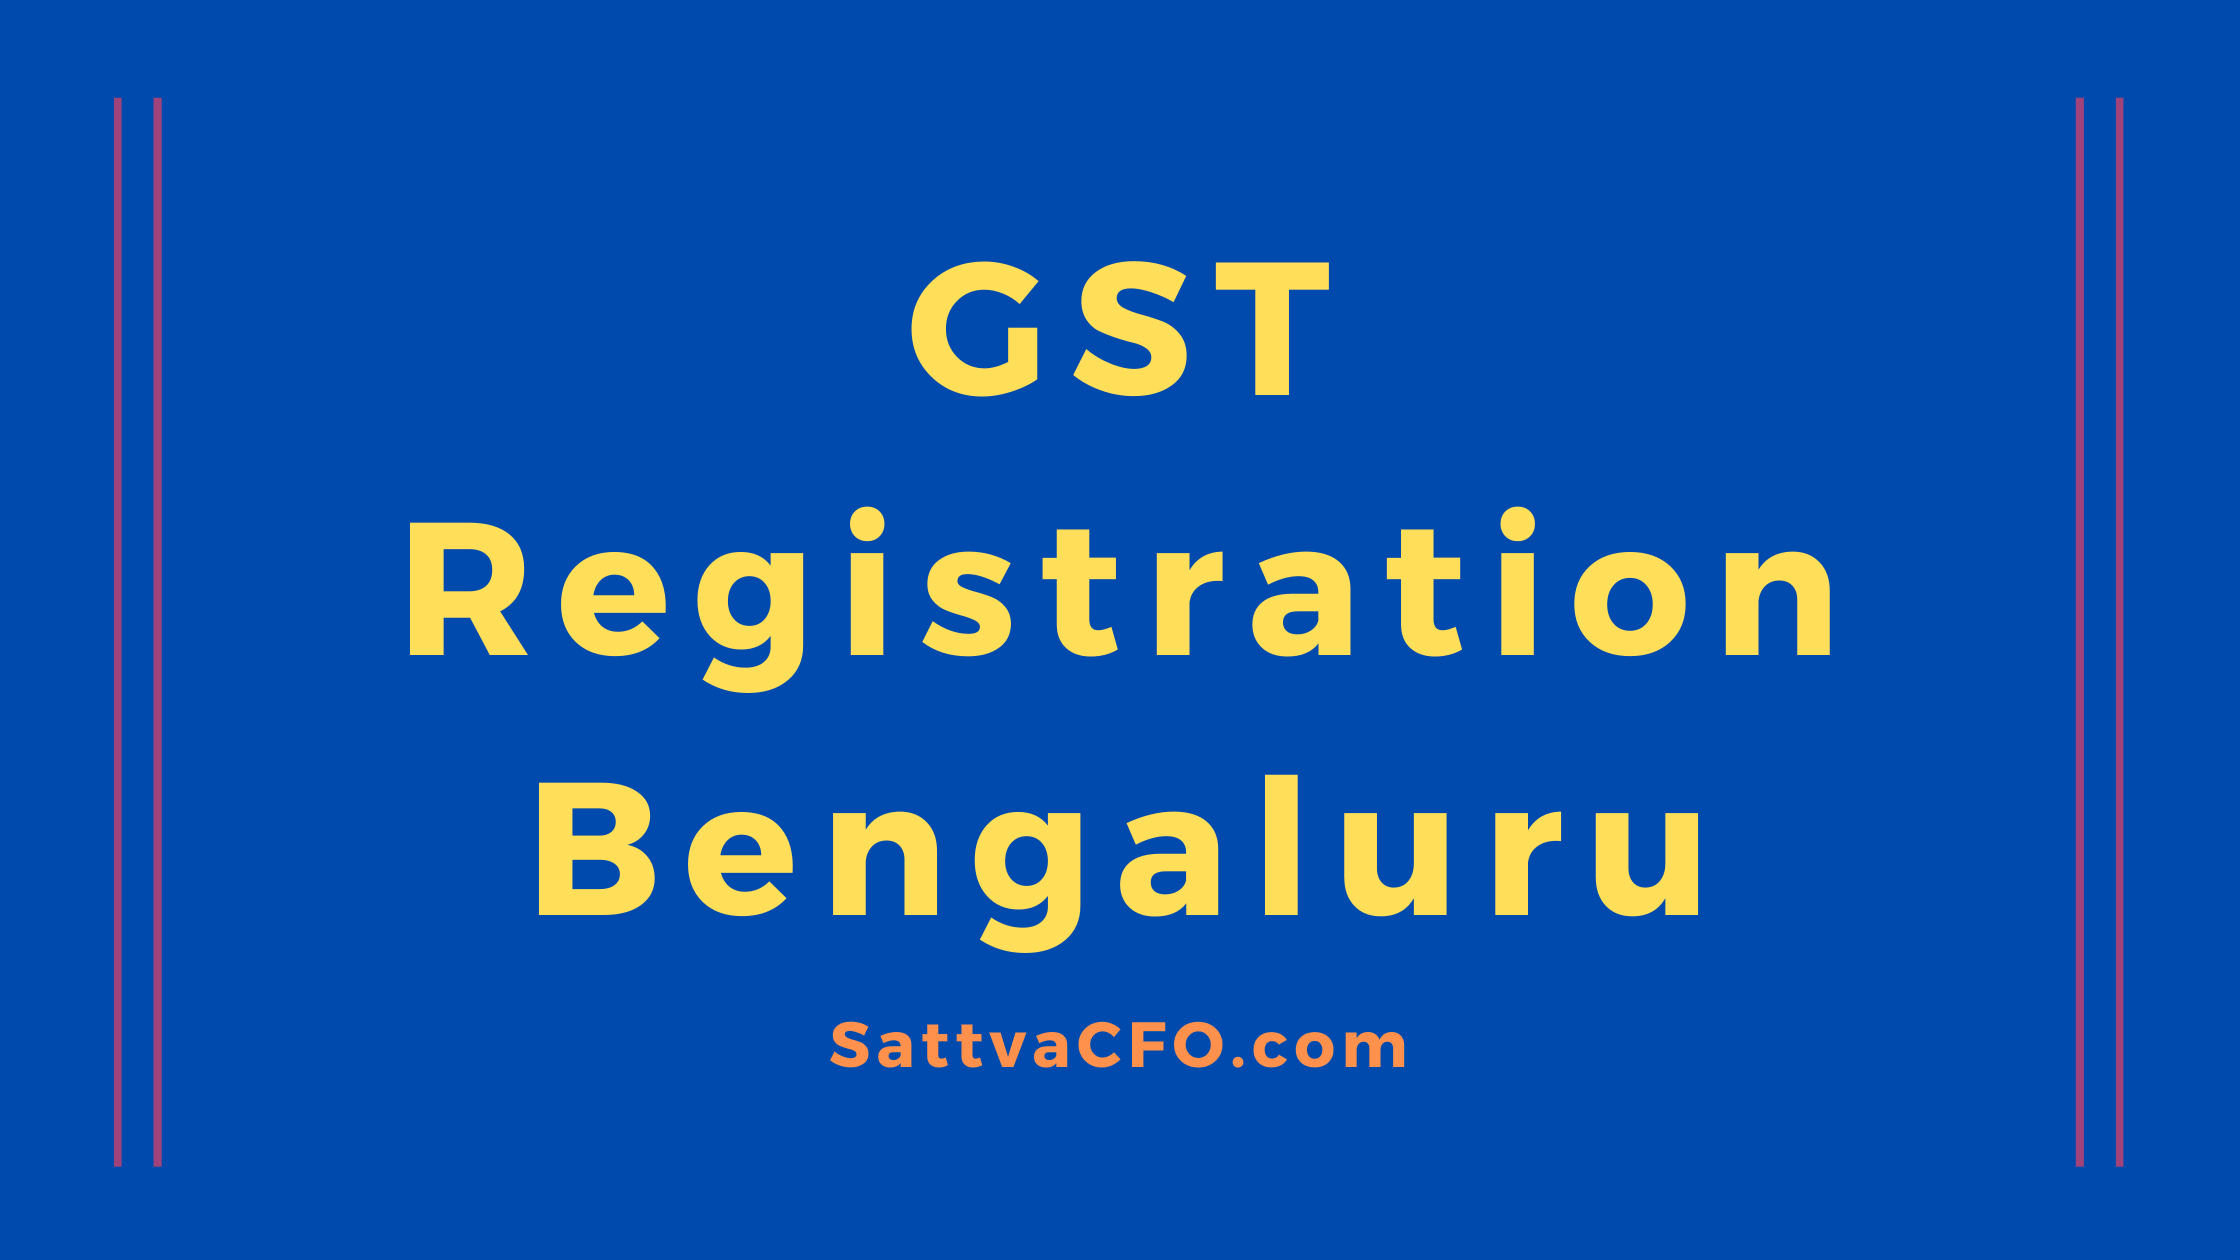 GST registration in Bengaluru | GST consultants in Bengaluru | SattvaCFO